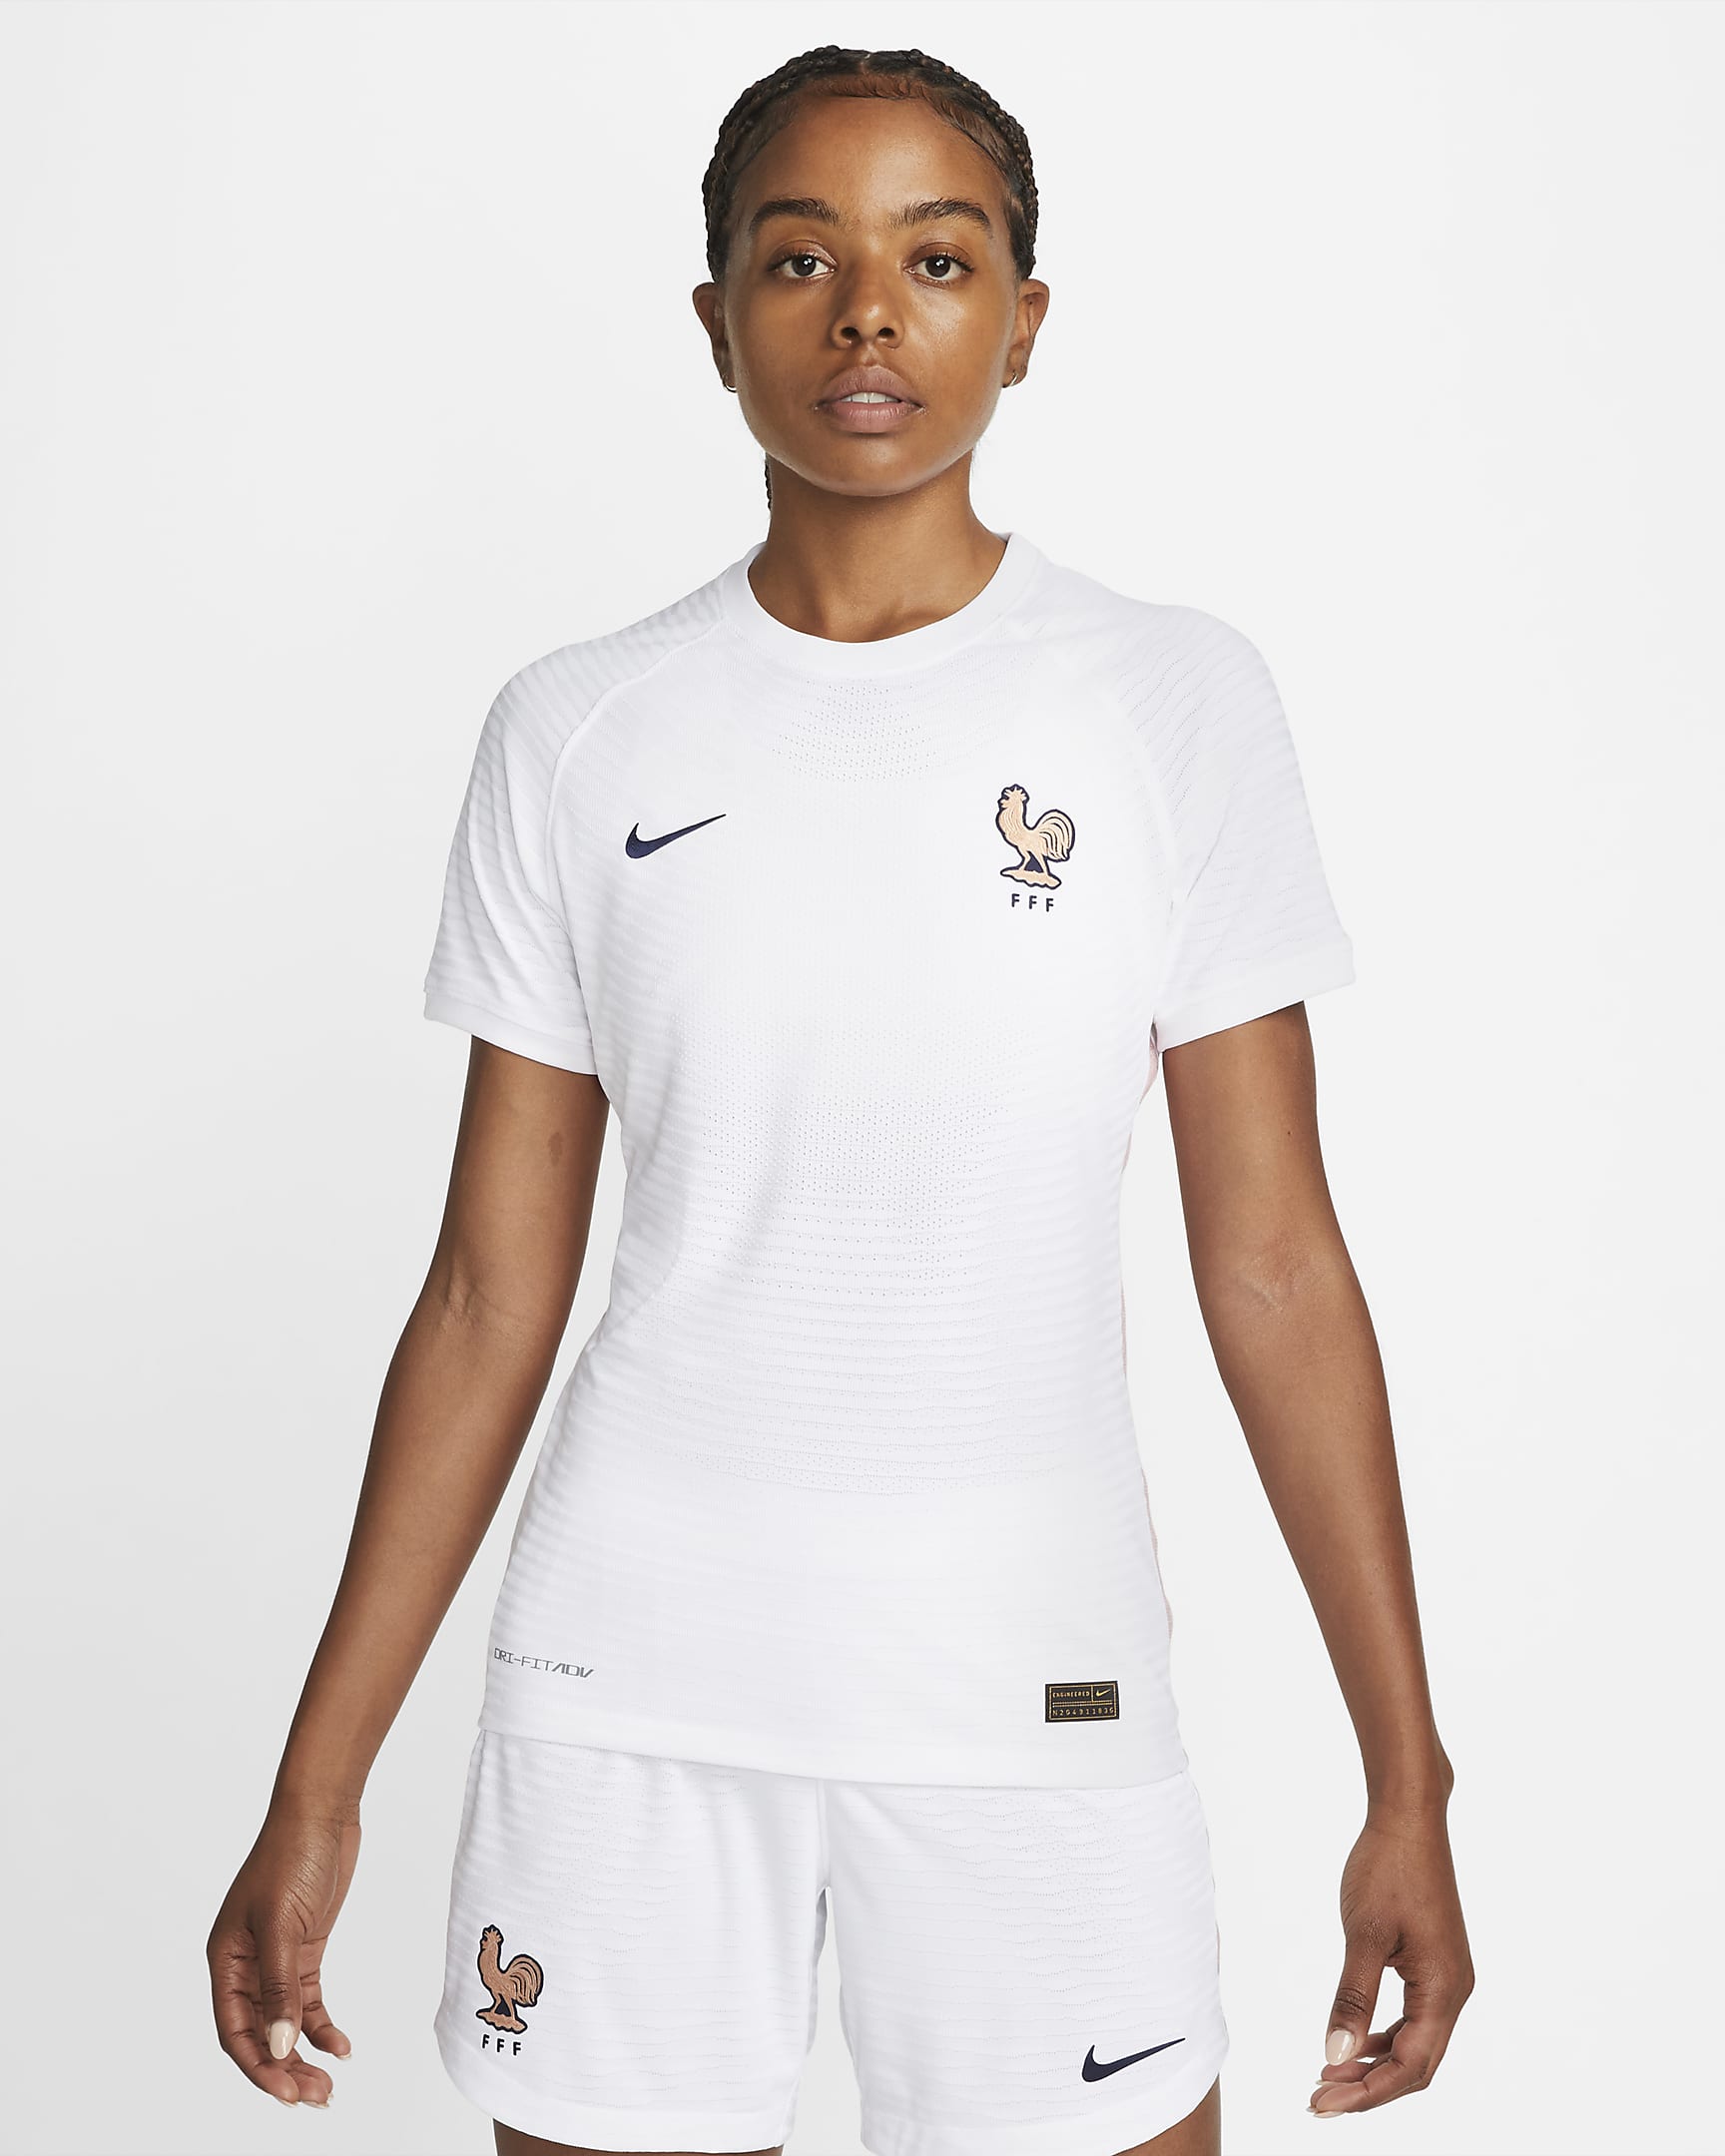 FFF 2022 Vapor Match Away Women's Football Shirt. Nike IL